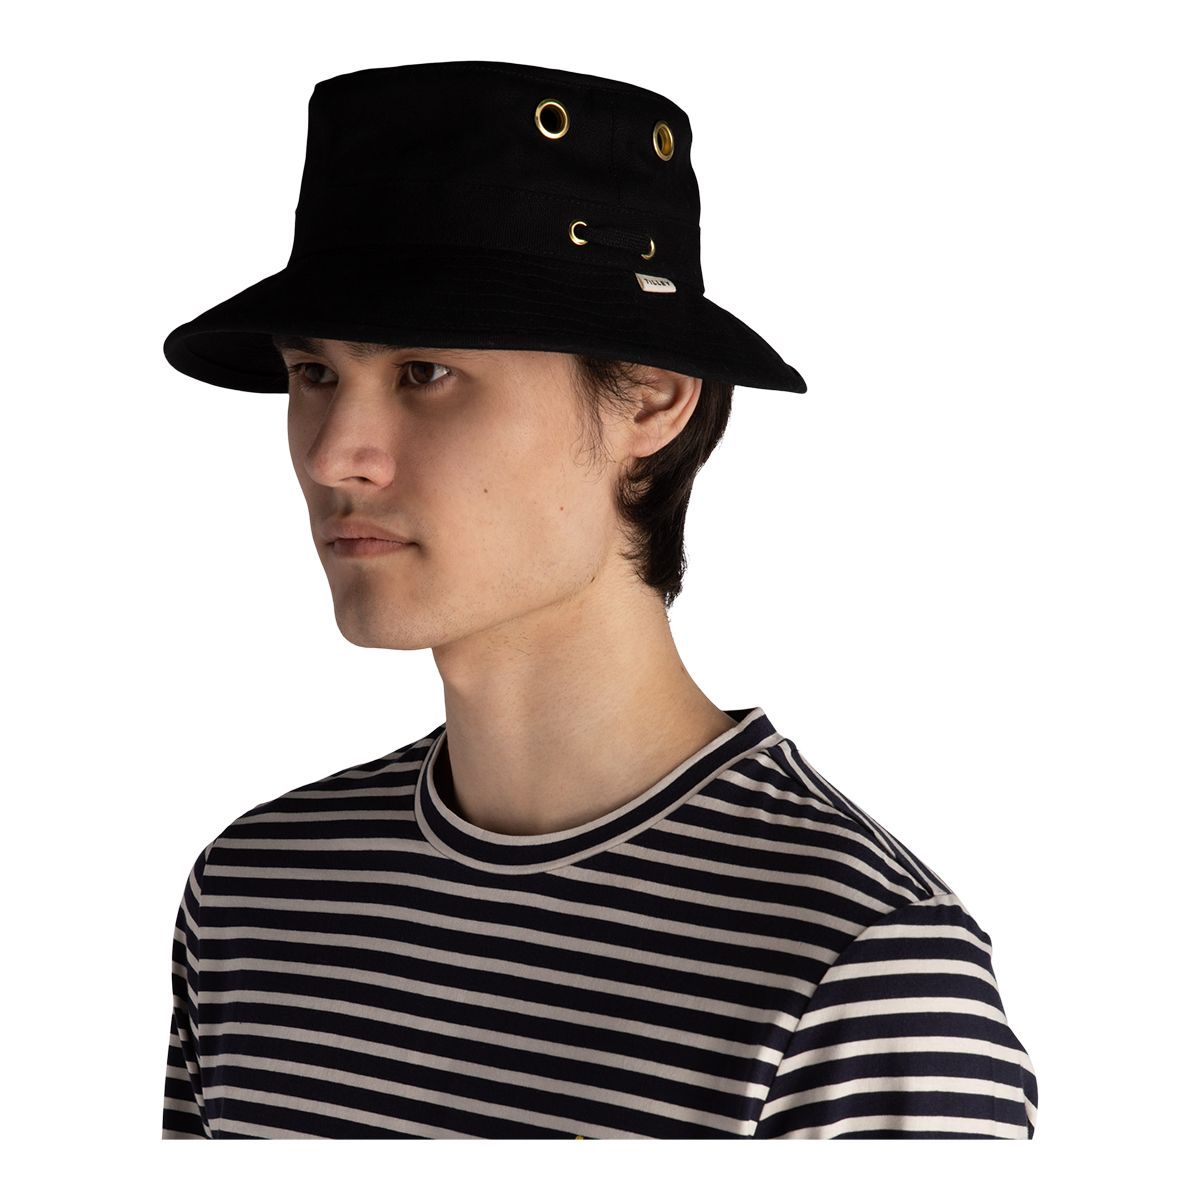 The Line-Up: Bucket Hats, Bucket Hats for Men